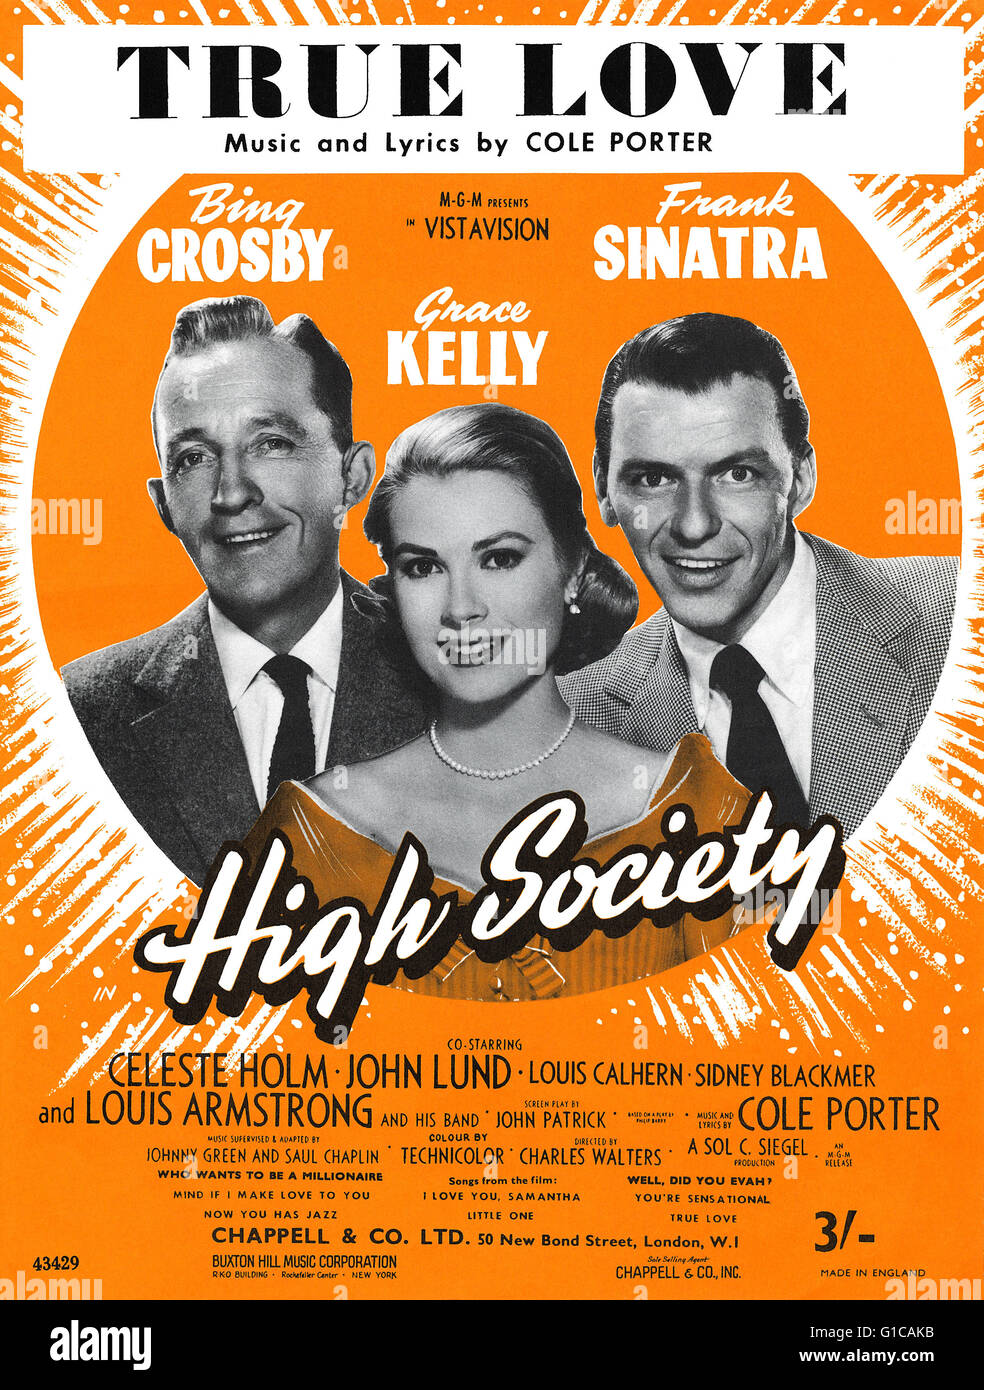 UK-Noten für die Cole Porter Song True Love aus dem Jahr 1956 Film High Society, mit Grace Kelly, Bing Crosby und Frank Sinatra. Stockfoto